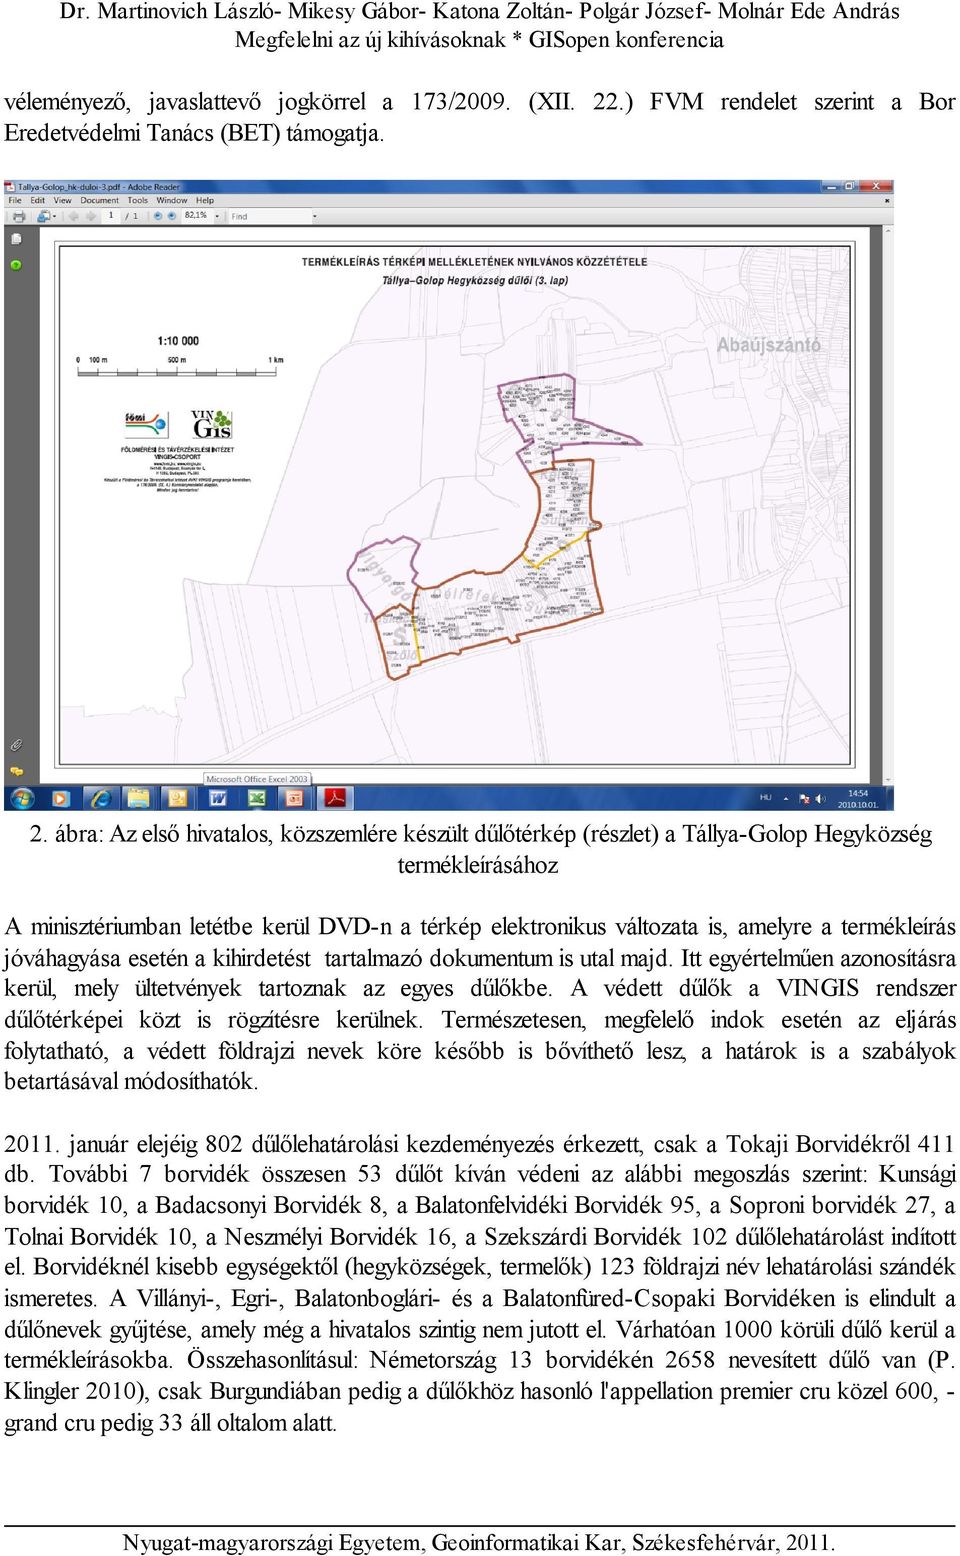 ábra: Az első hivatalos, közszemlére készült dűlőtérkép (részlet) a Tállya-Golop Hegyközség termékleírásához A minisztériumban letétbe kerül DVD-n a térkép elektronikus változata is, amelyre a